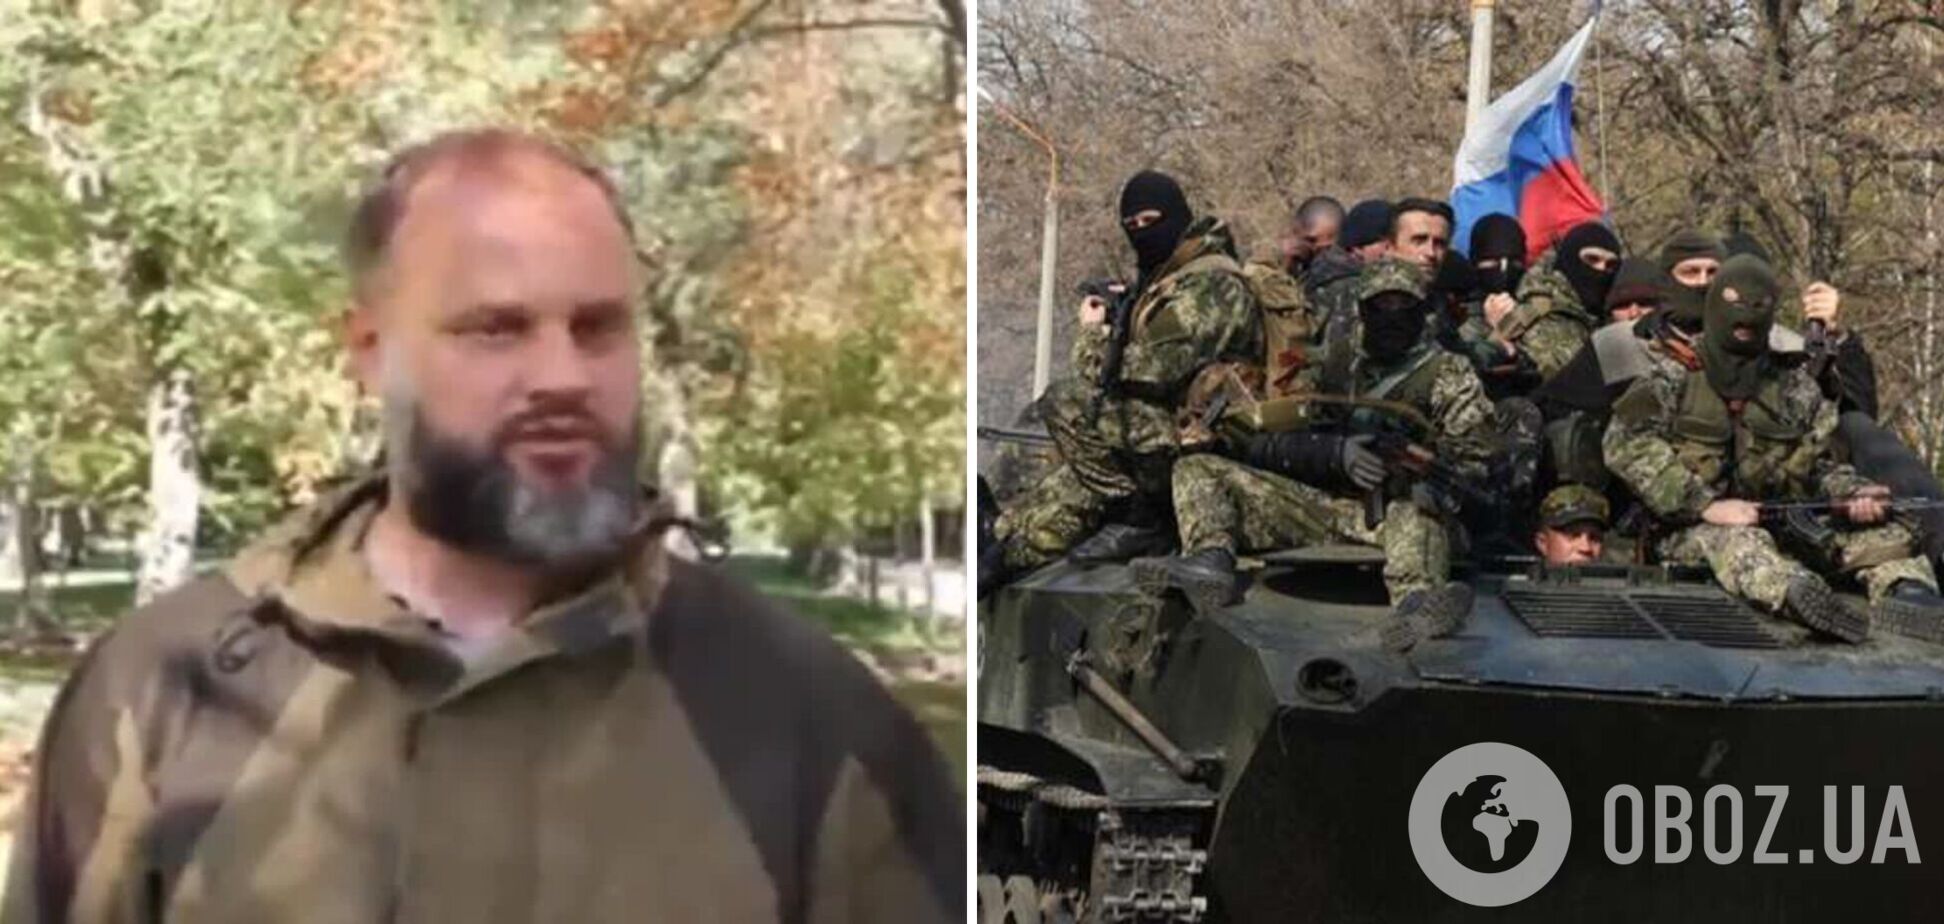 'Хоть всех уничтожим': террорист Губарев размечтался об убийствах миллионов украинцев. Видео